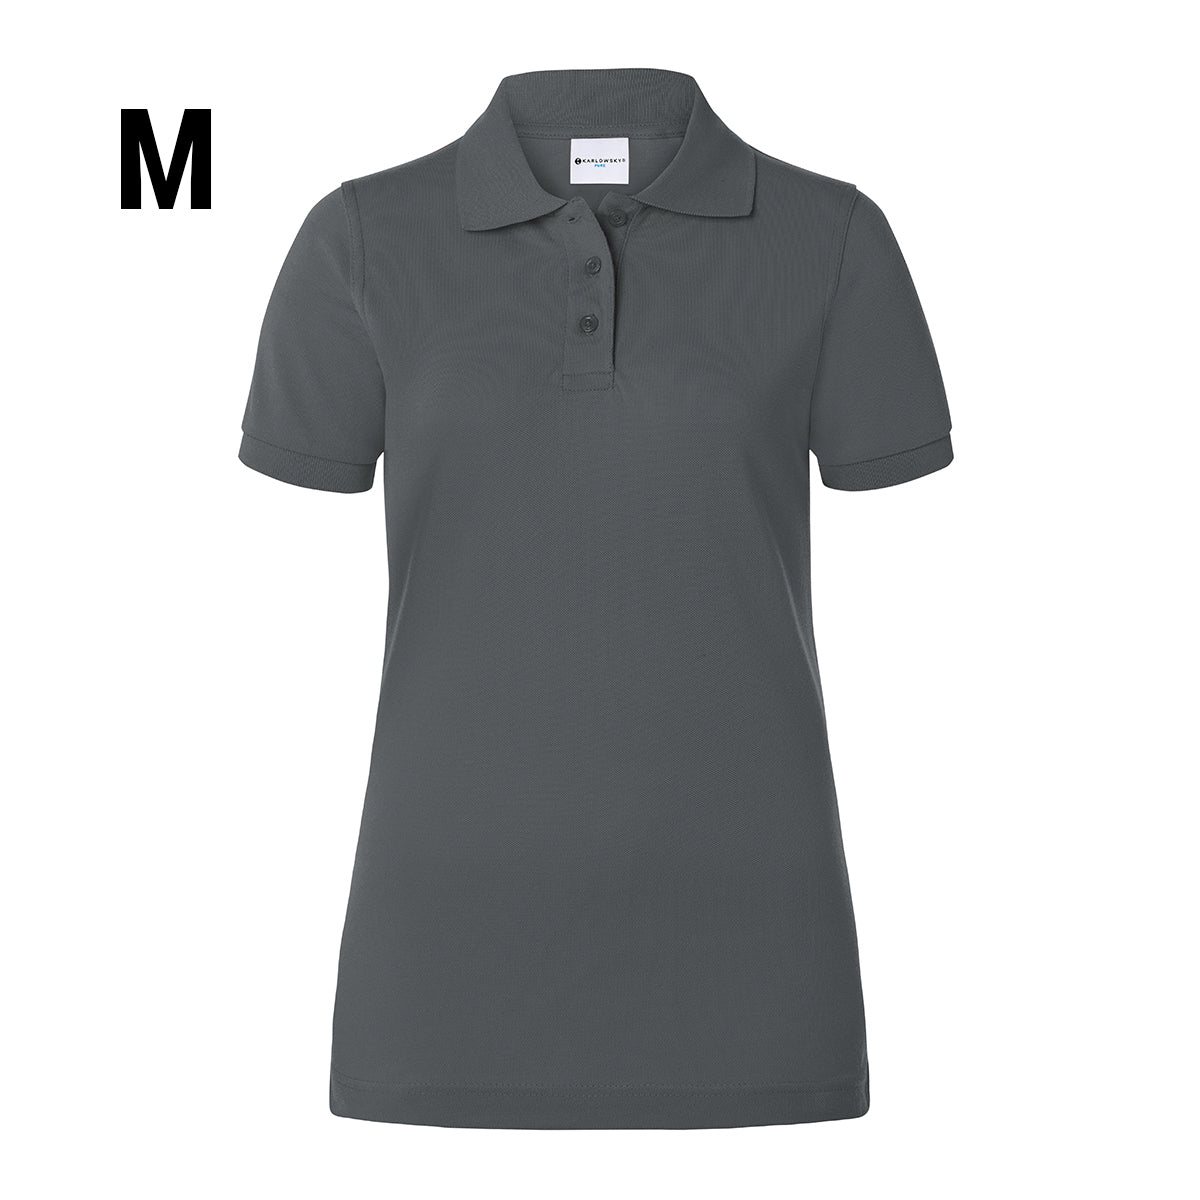 Karlowsky - Arbejdsbeklædning Basic Poloshirt til damer - Antracit - Størrelse: M